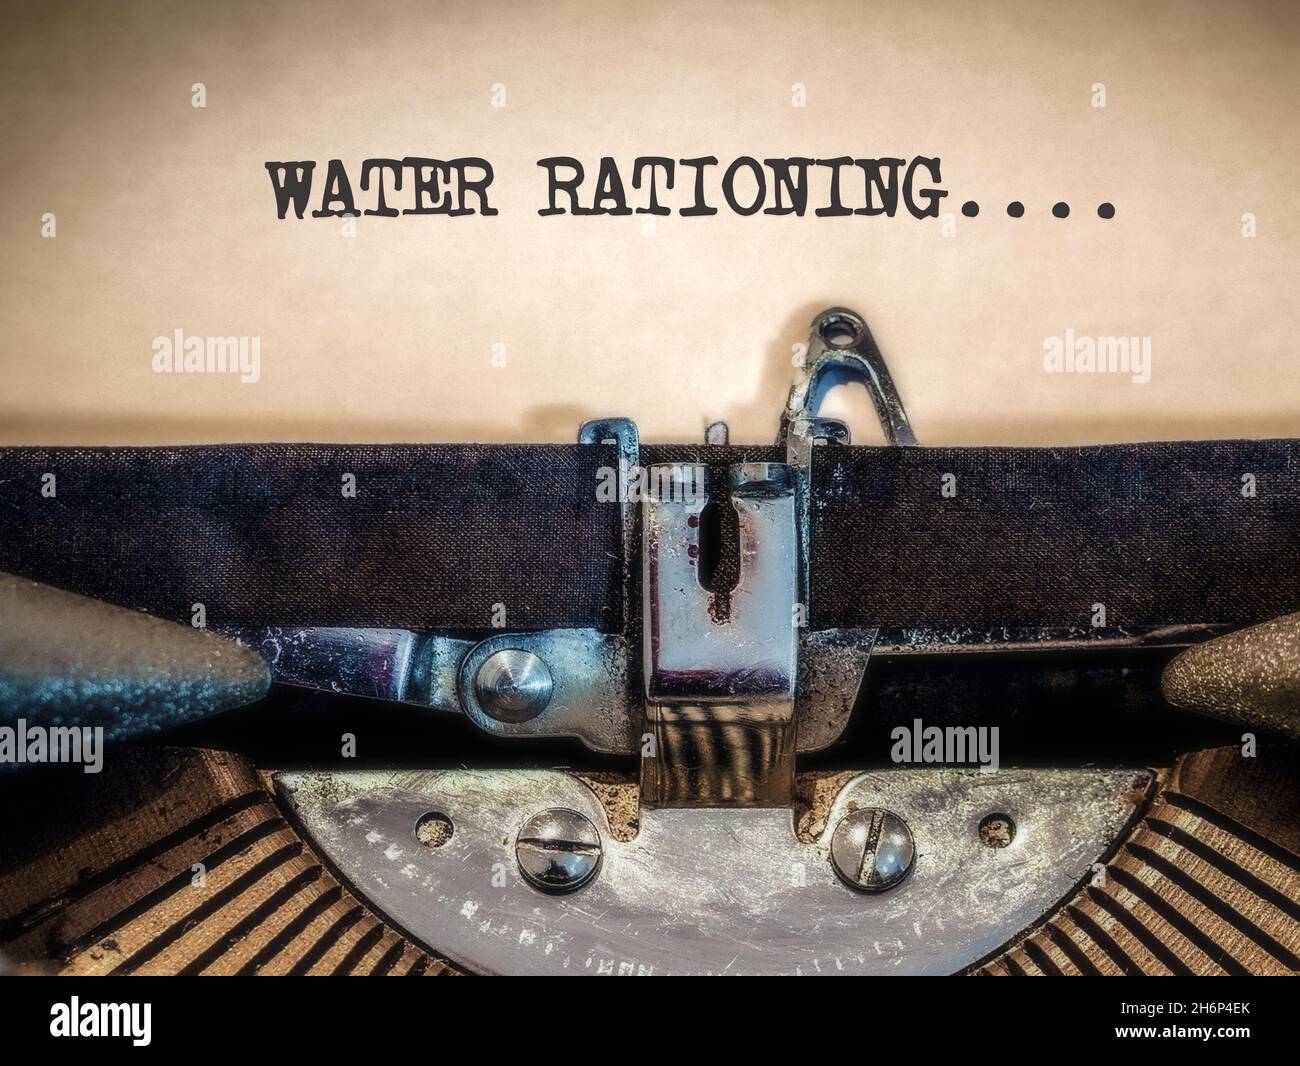 Water rationing displayed on a typewriter Stock Photo